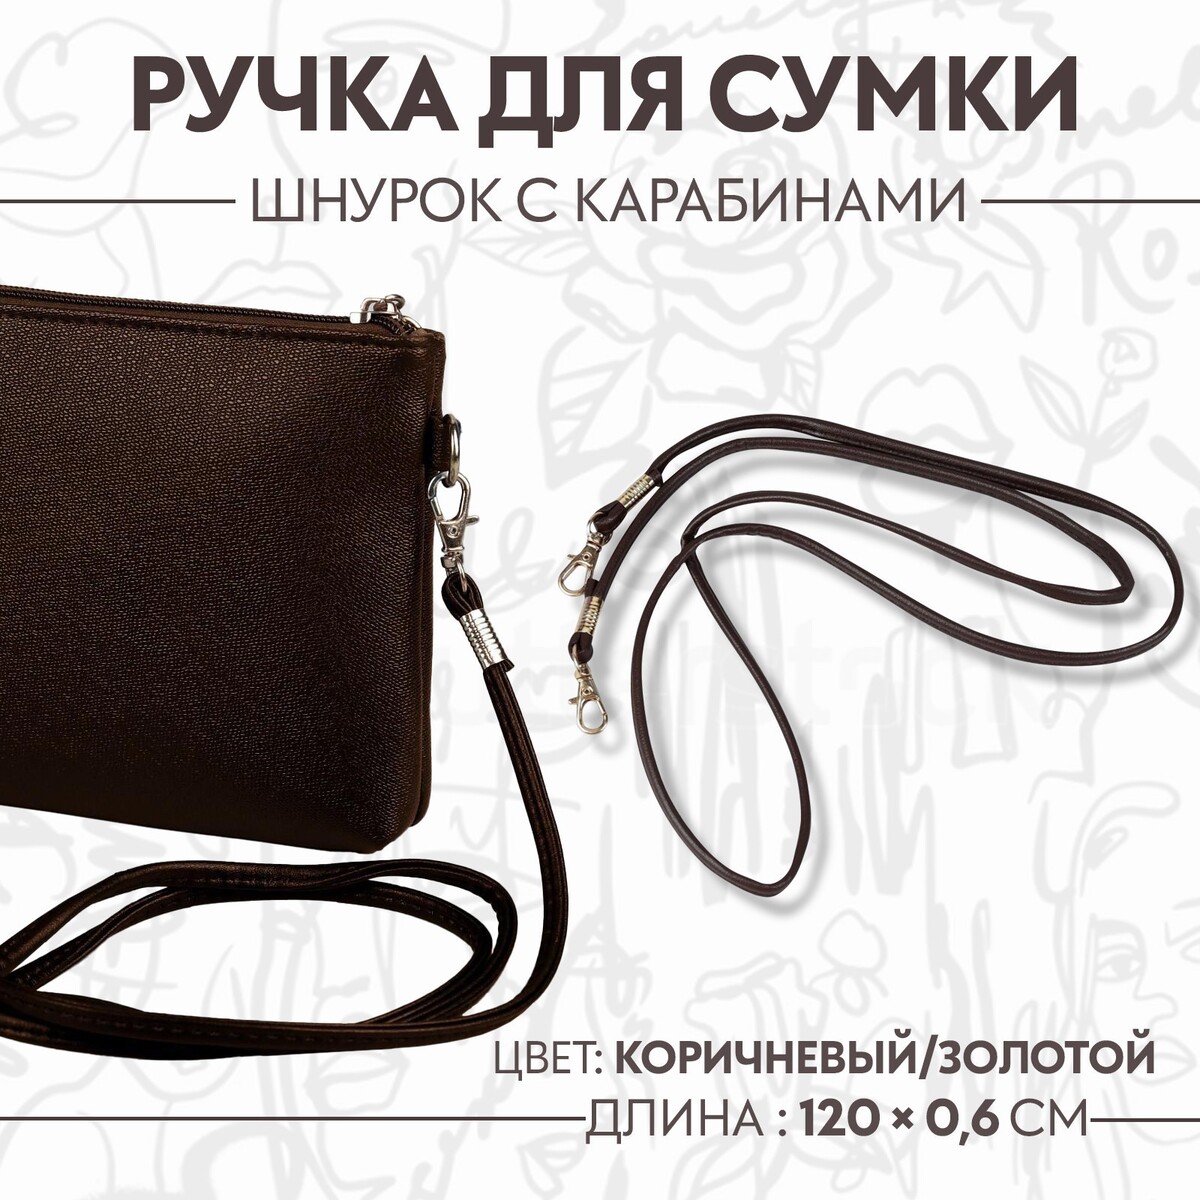 Ручка-шнурок для сумки, с карабинами, 120 × 0,6 см, цвет коричневый ручка для сумки с карабинами 60 ± 1 см × 2 см серый